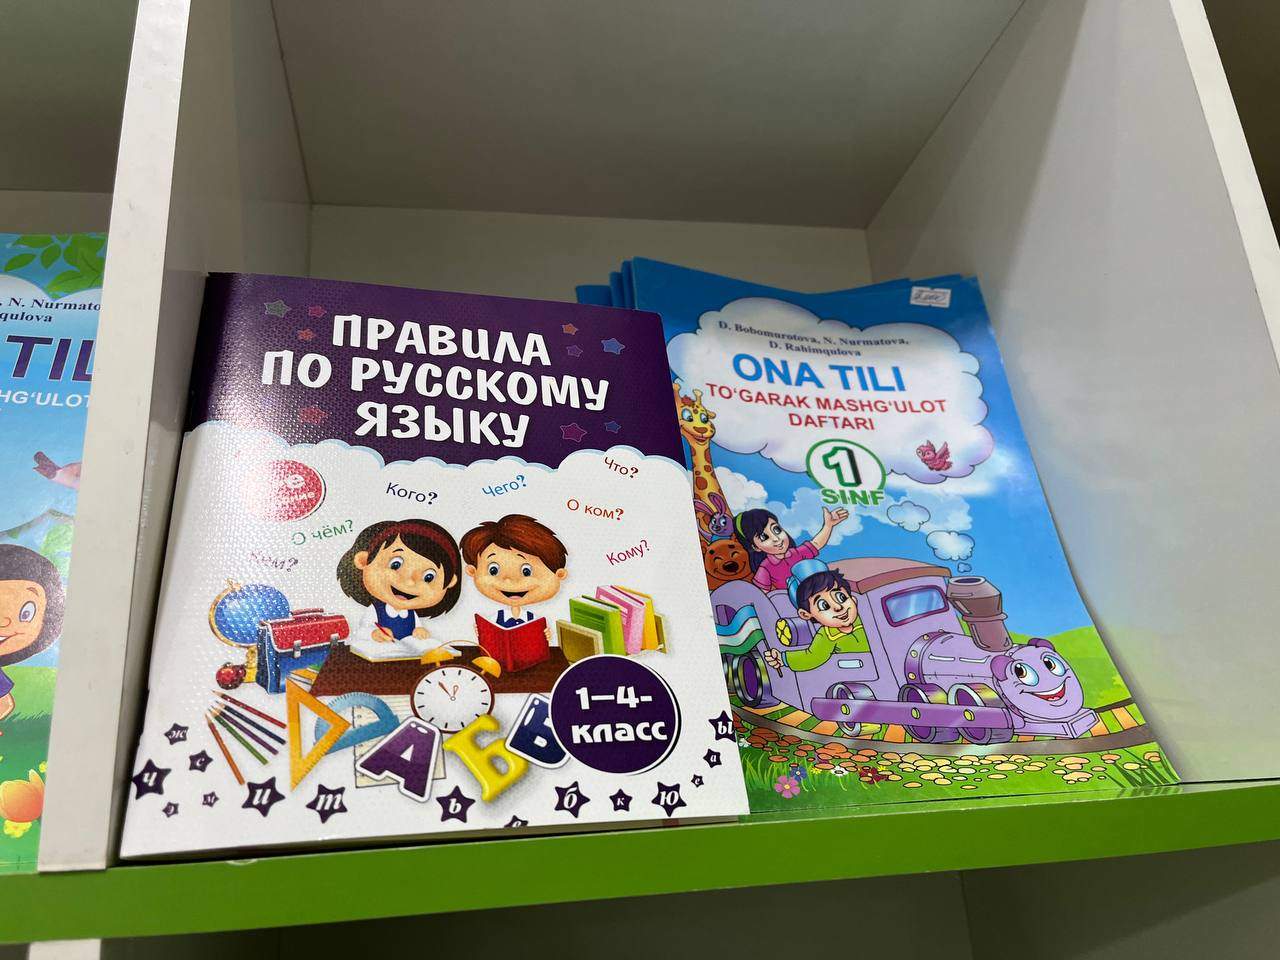 ウズベク語とロシア語の教科書